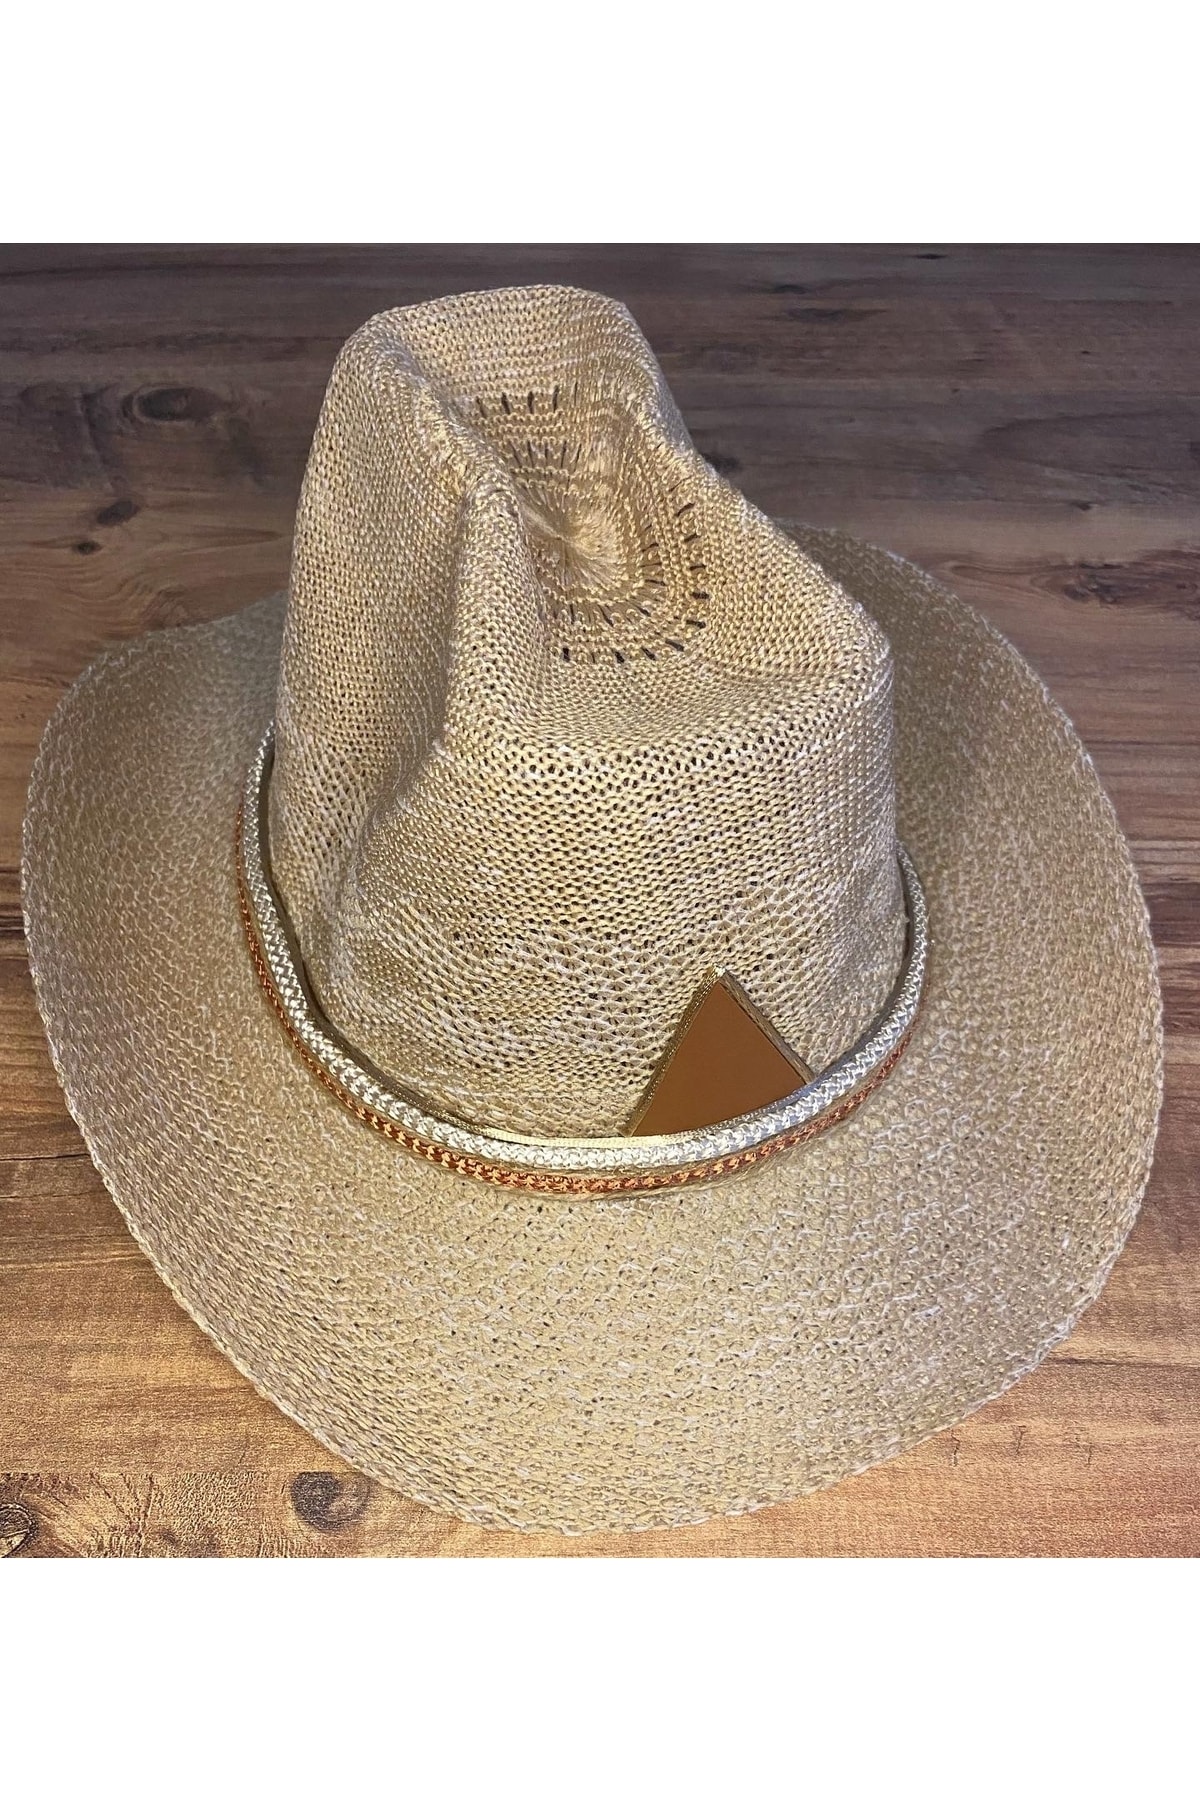 AYŞE SERHOŞOĞLU HOME DESİGN Kadın Hasır Plaj Şapkası, Kovboy Şapkası, Tasarım Hasır Şapka, Günlük Yazlık Şapka, Fötr Şapka OH10196